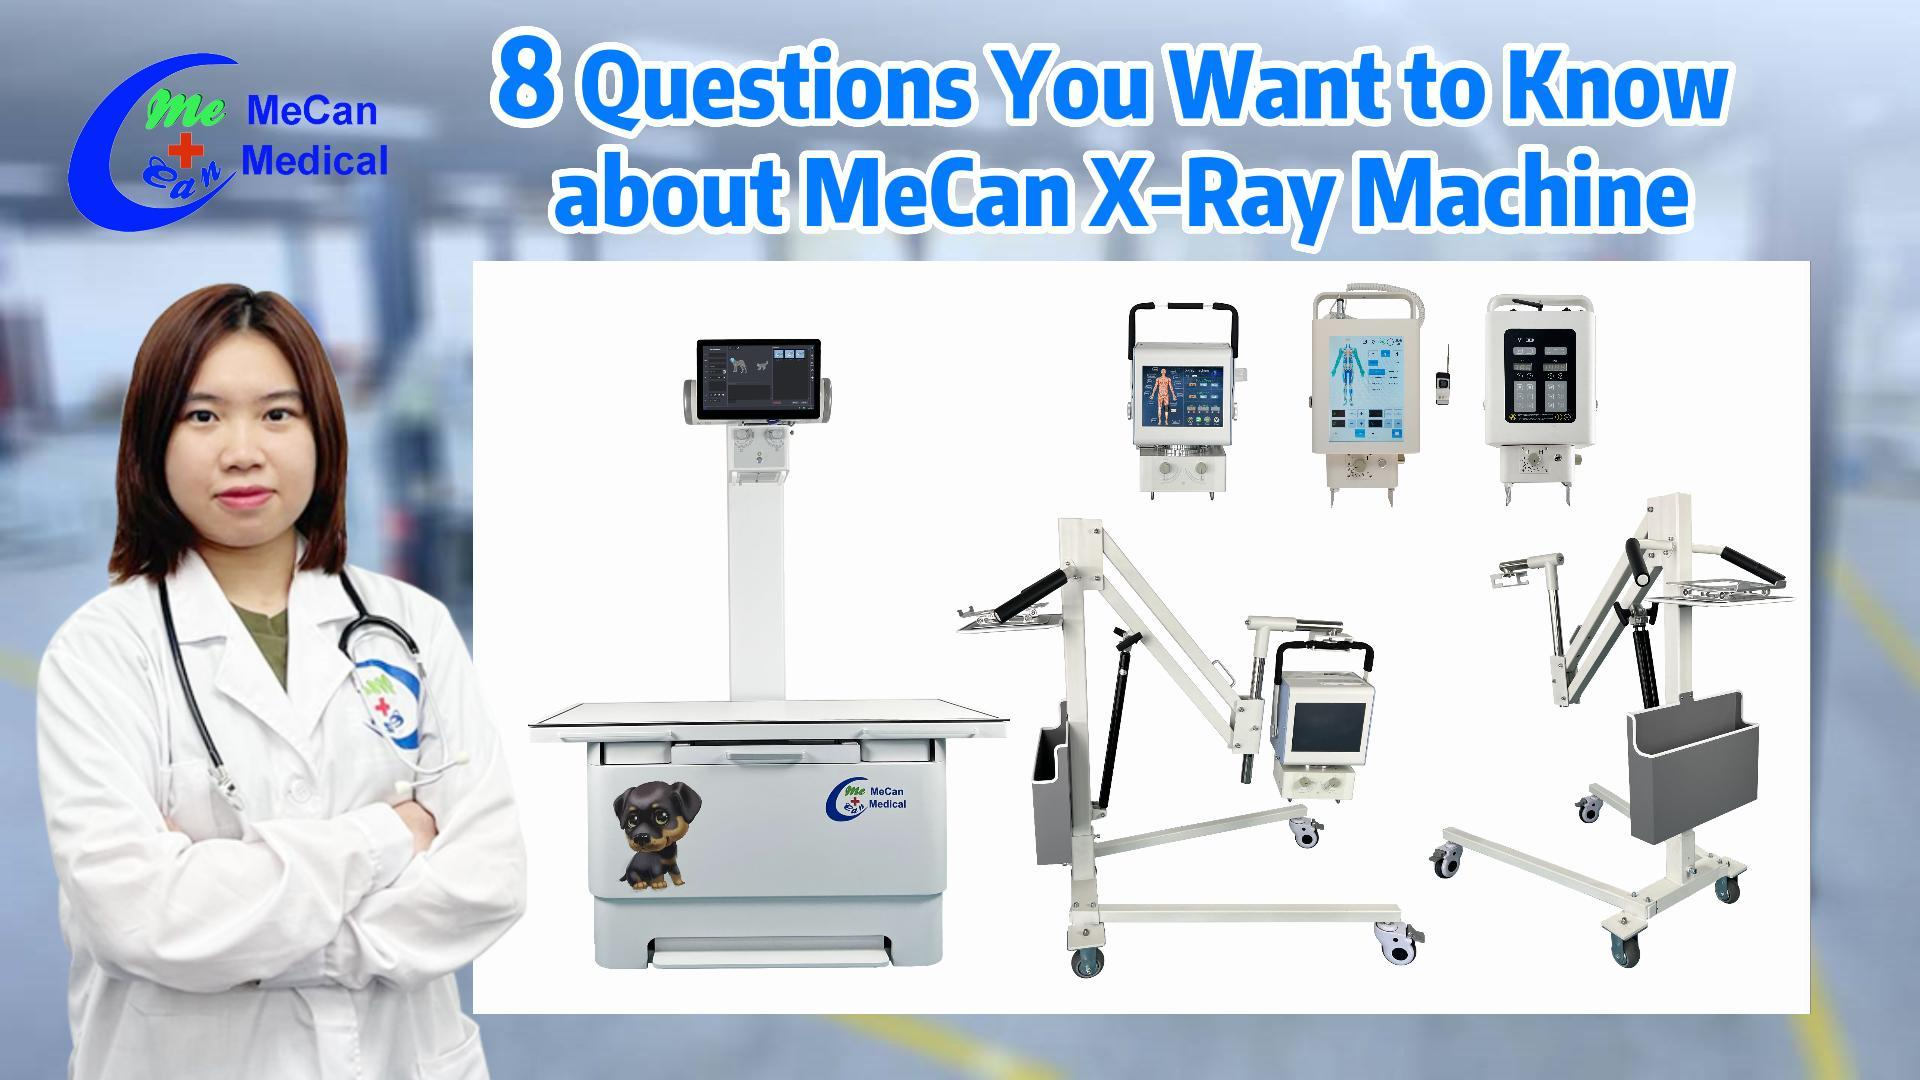 मेकेन एक्स-रे मशीन के बारे में 8 प्रश्न जो आप जानना चाहते हैं |मेकेन मेडिकल